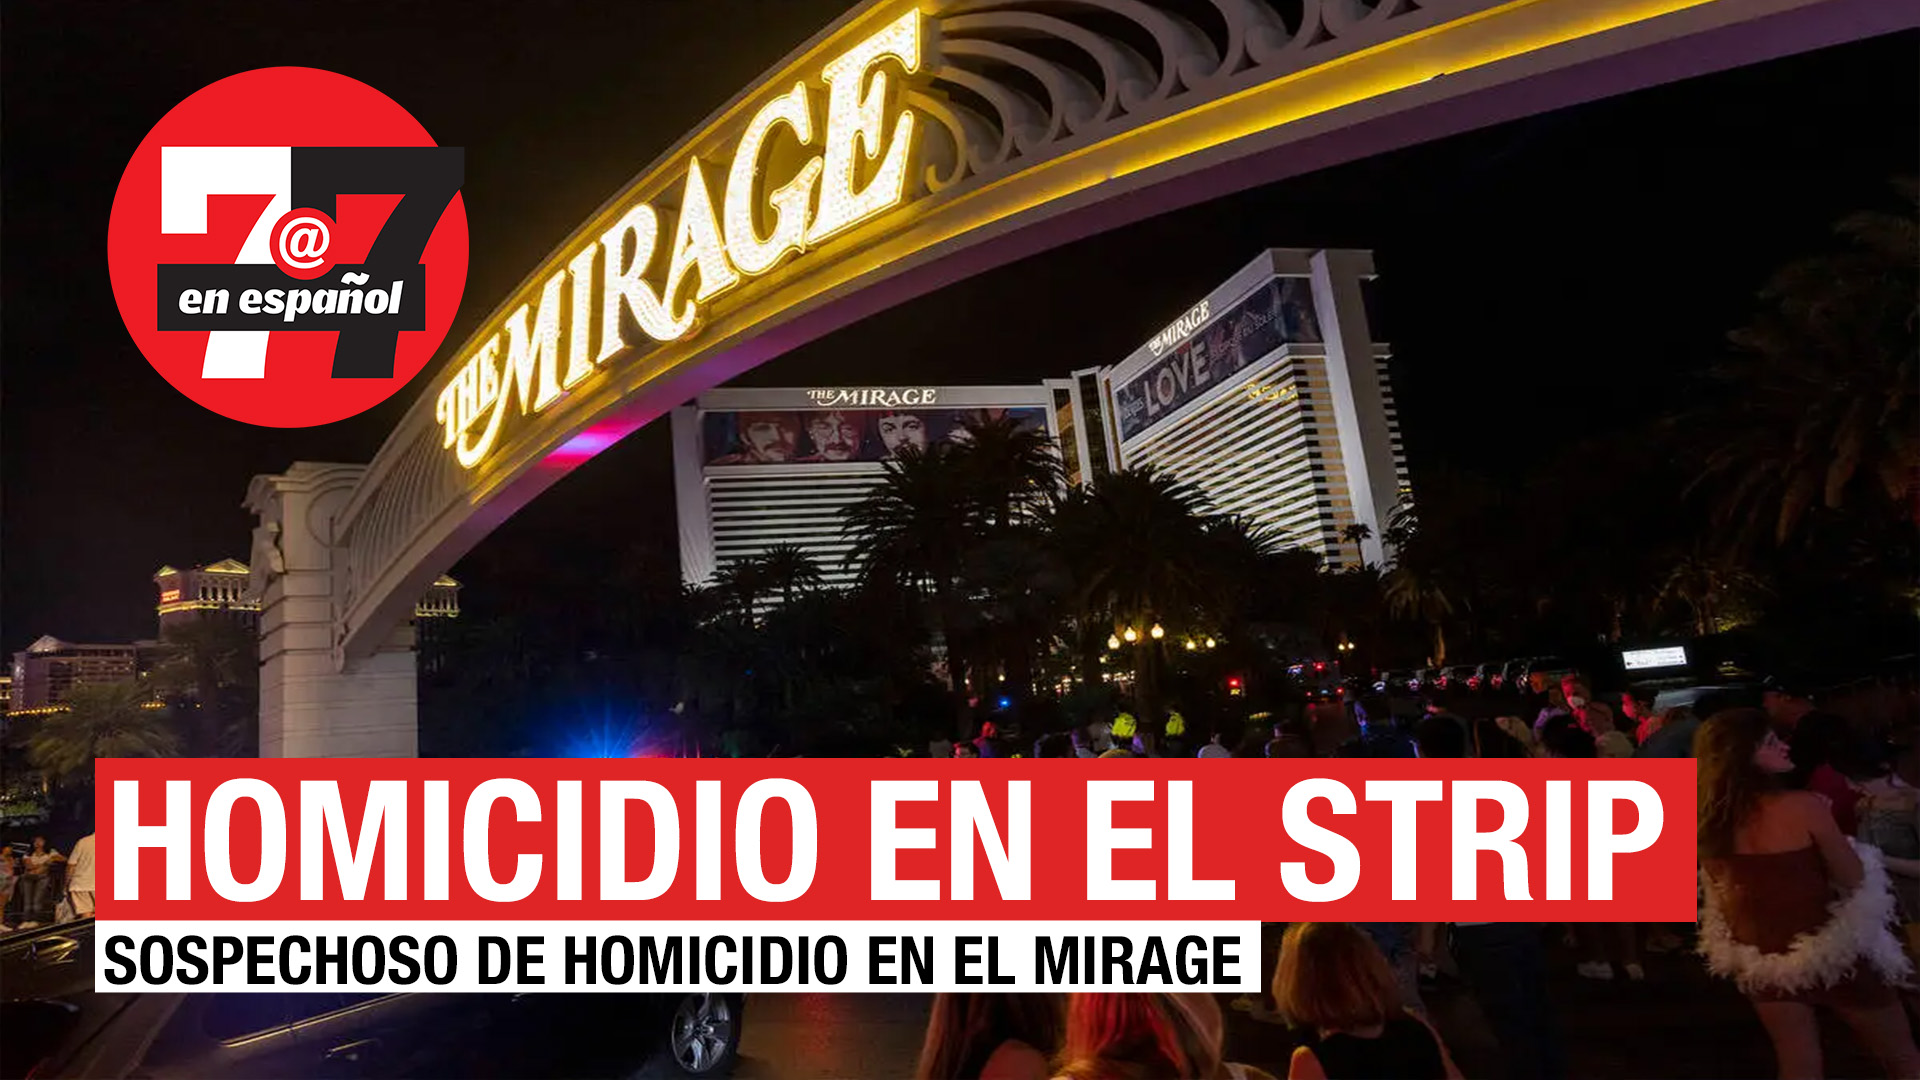 Noticias de Las Vegas | Sospechoso de homicidio en el Strip tenía un pasado criminal extenso